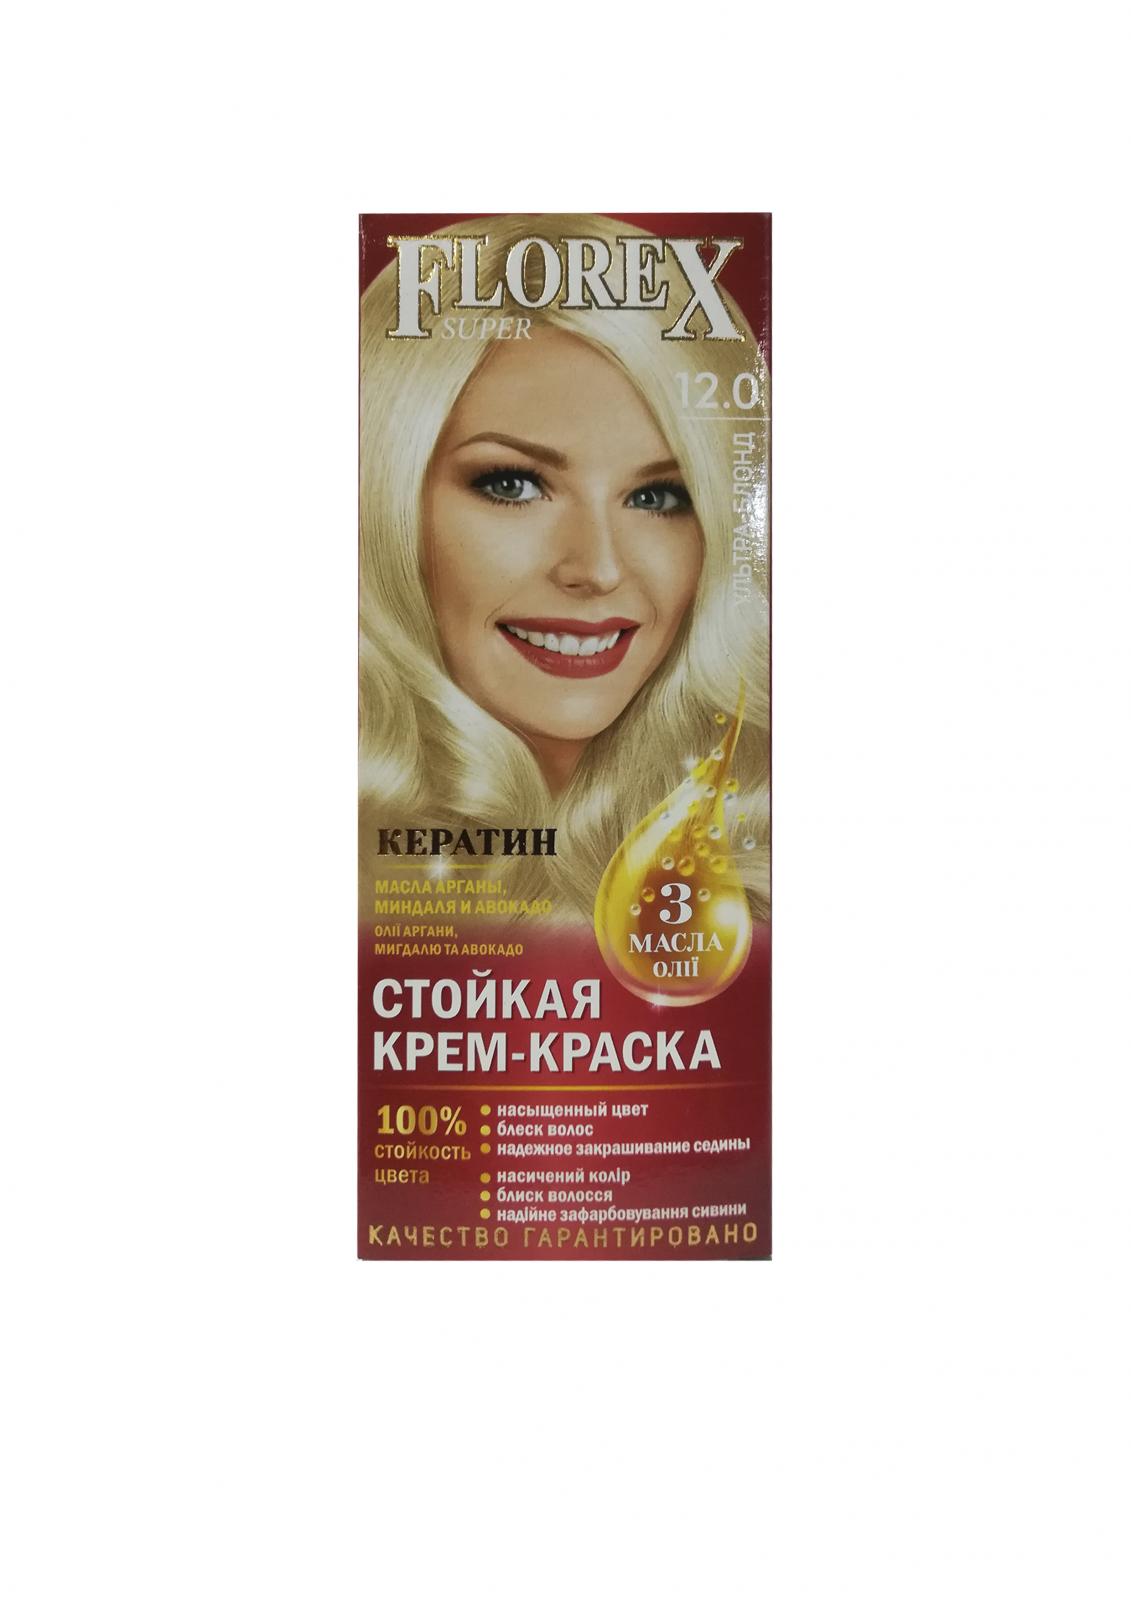 Стойкая крем-краска д/волос "Florex super", тон .12.0 Ультра-блонд